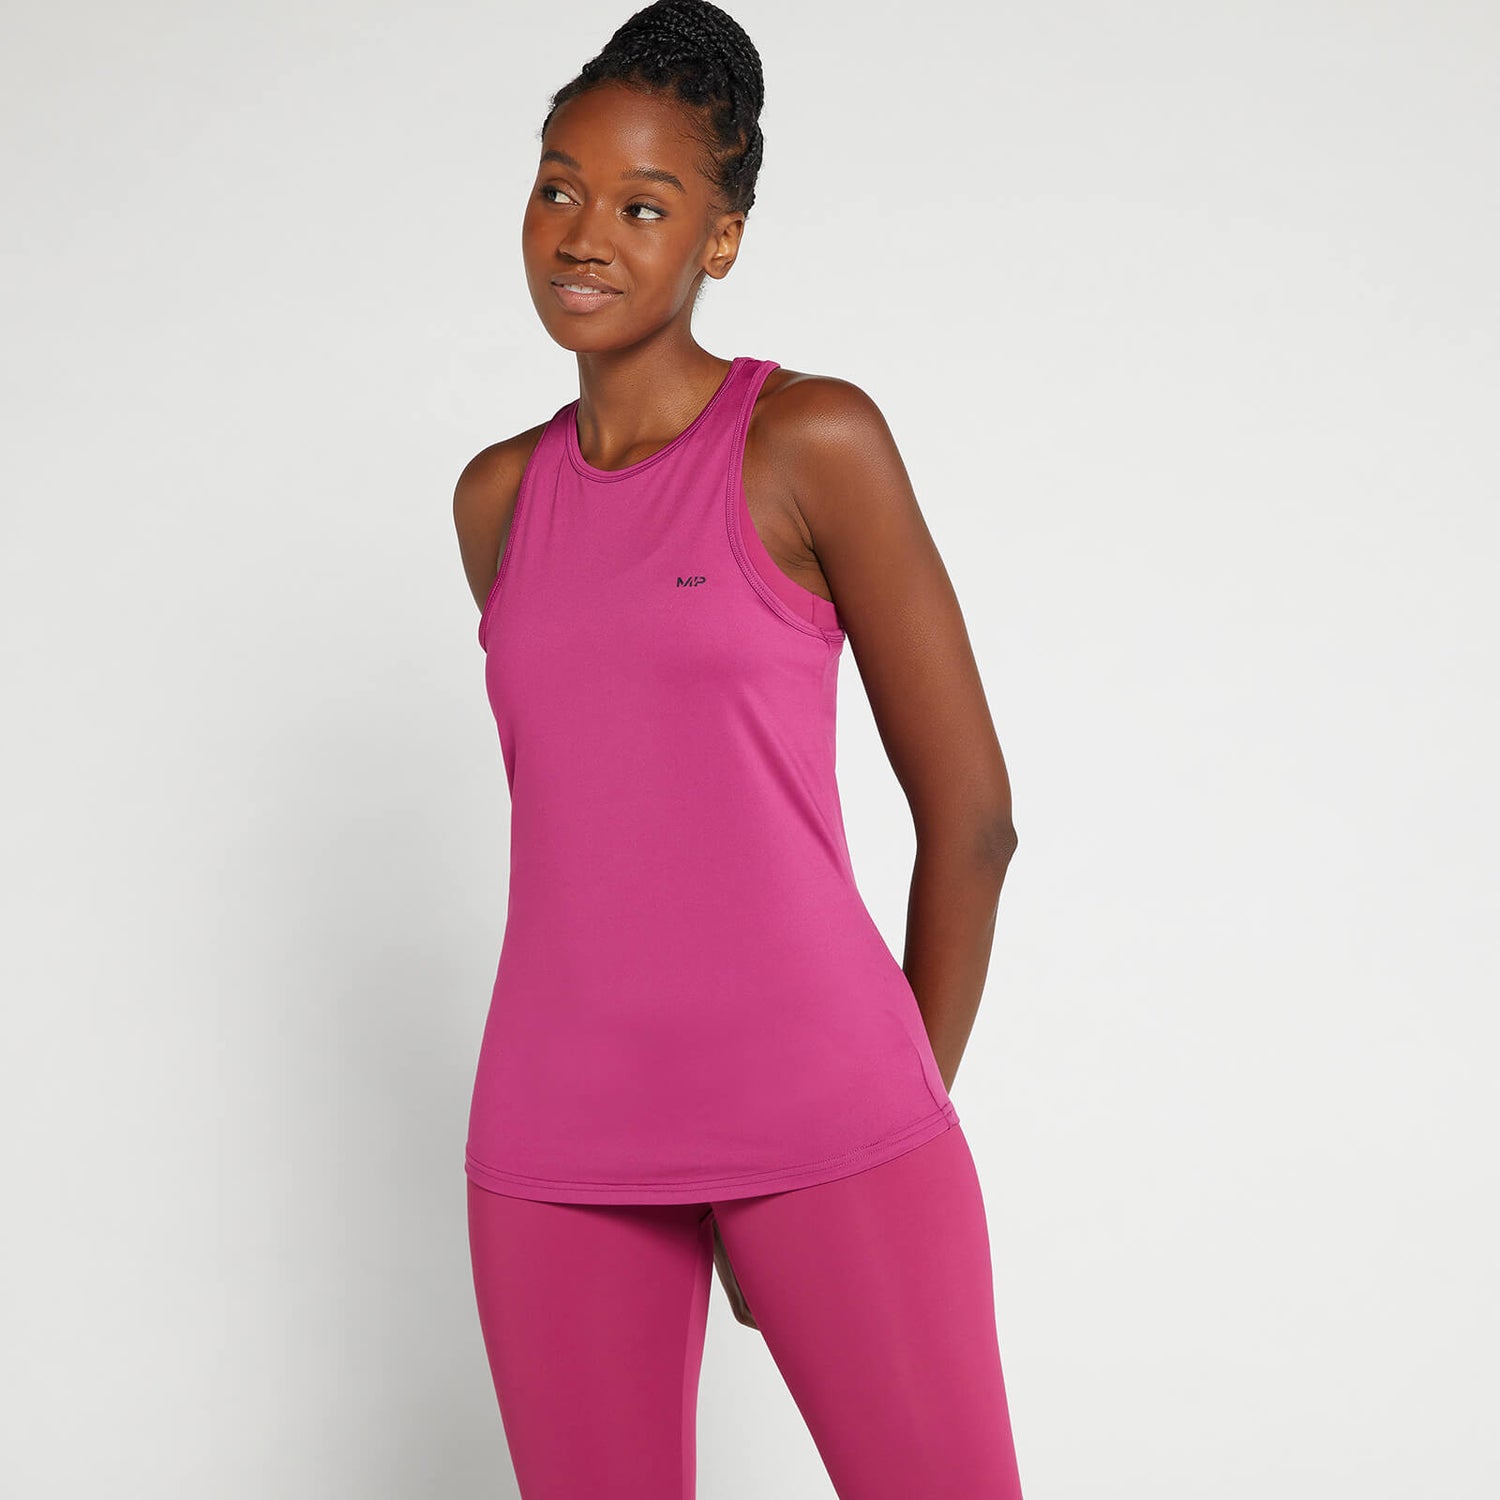 Damska koszulka bez rękawów z plecami w stylu racerback z kolekcji MP – Deep Pink - XXS